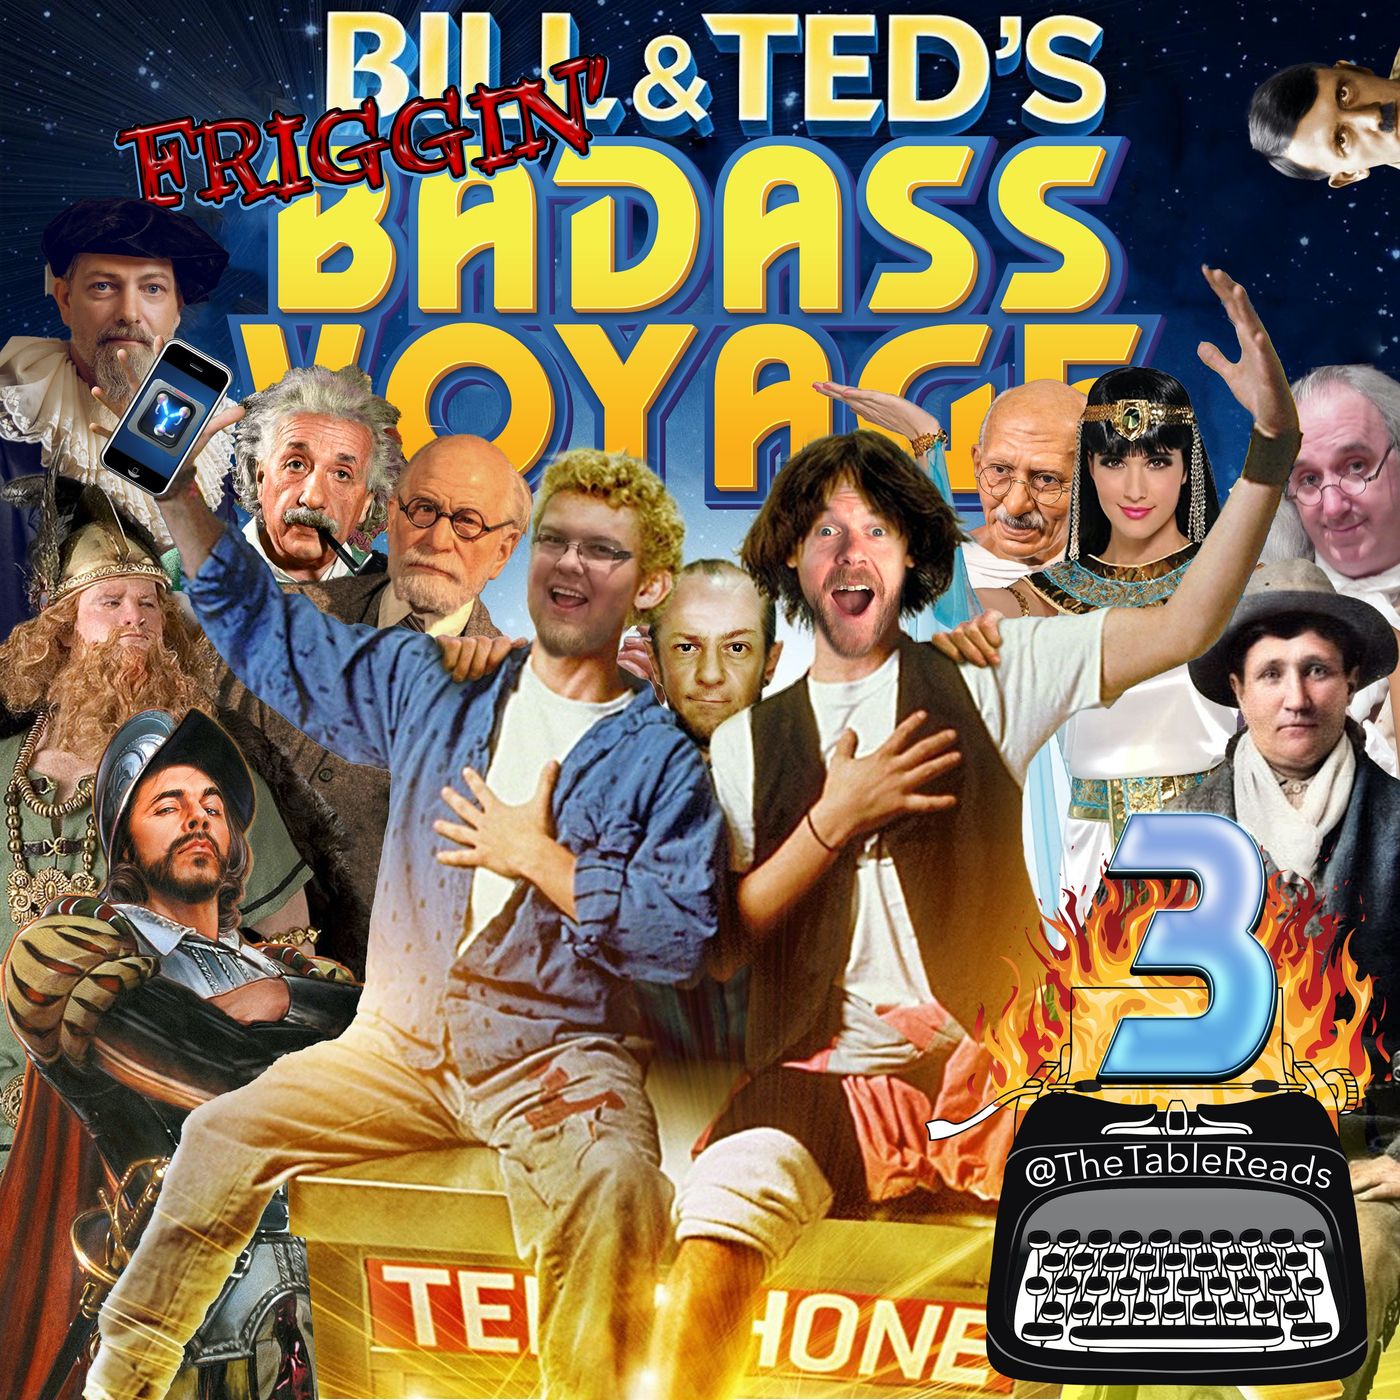 133 - Bill & Ted’s Friggin’ Badass Voyage, Part 3